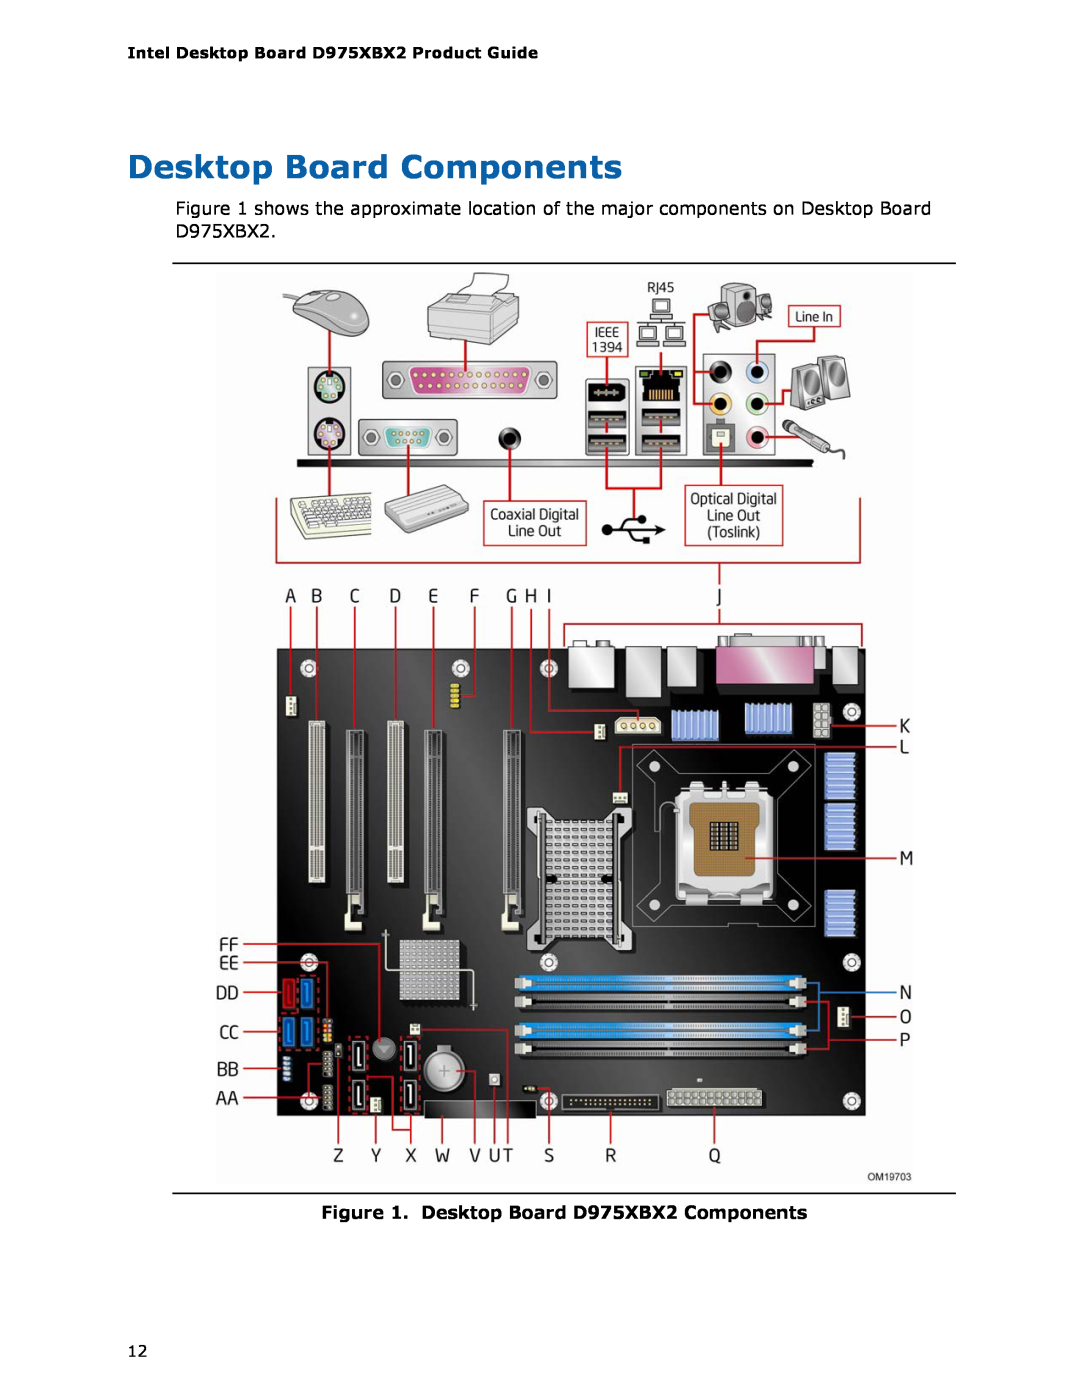 Intel manual Desktop Board Components, Desktop Board D975XBX2 Components 